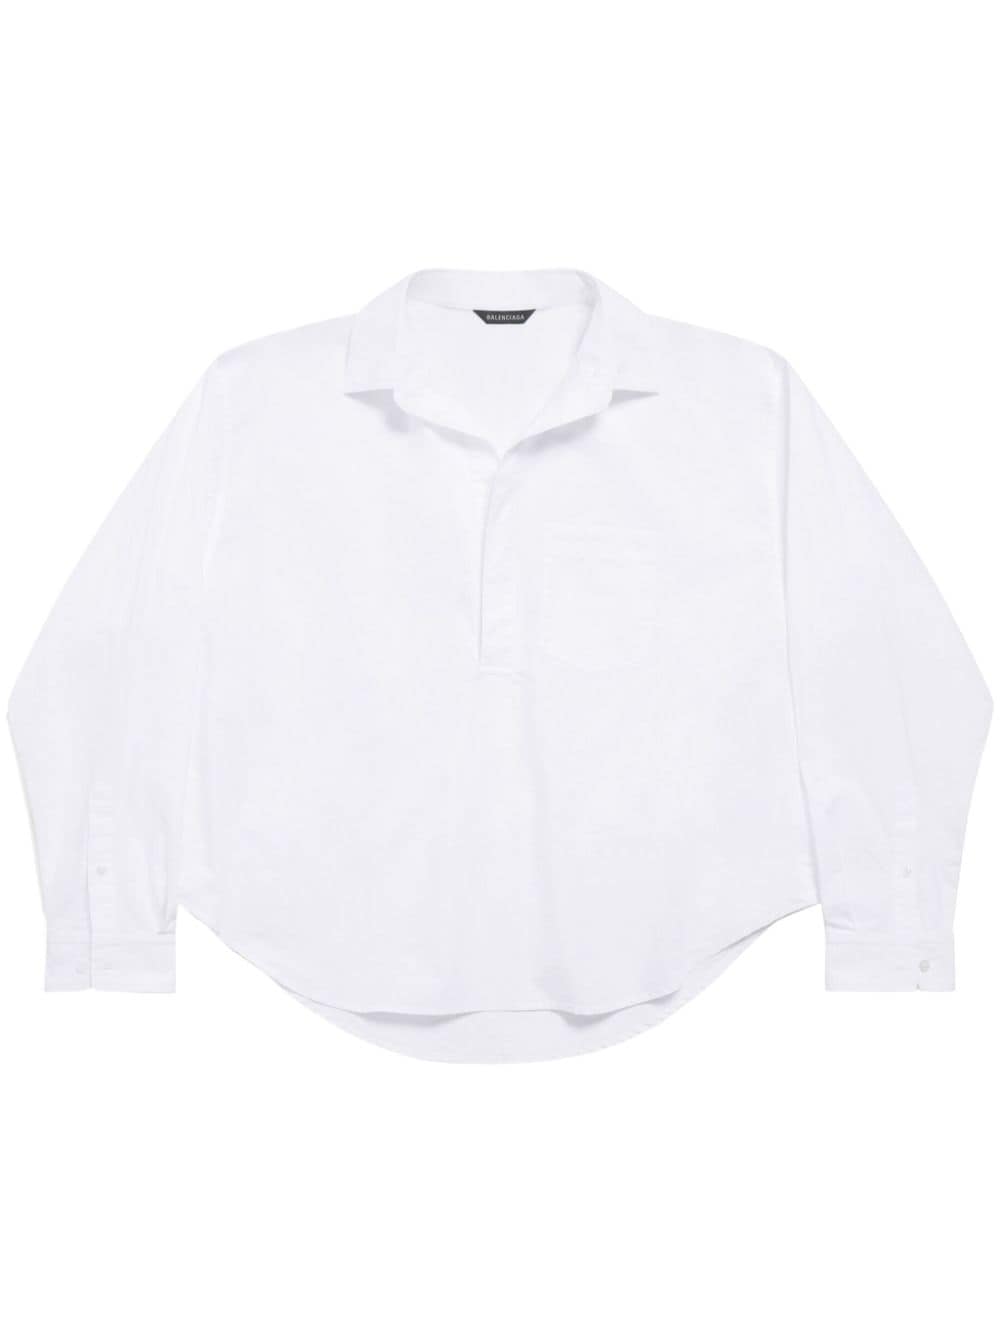 Balenciaga Shirts White